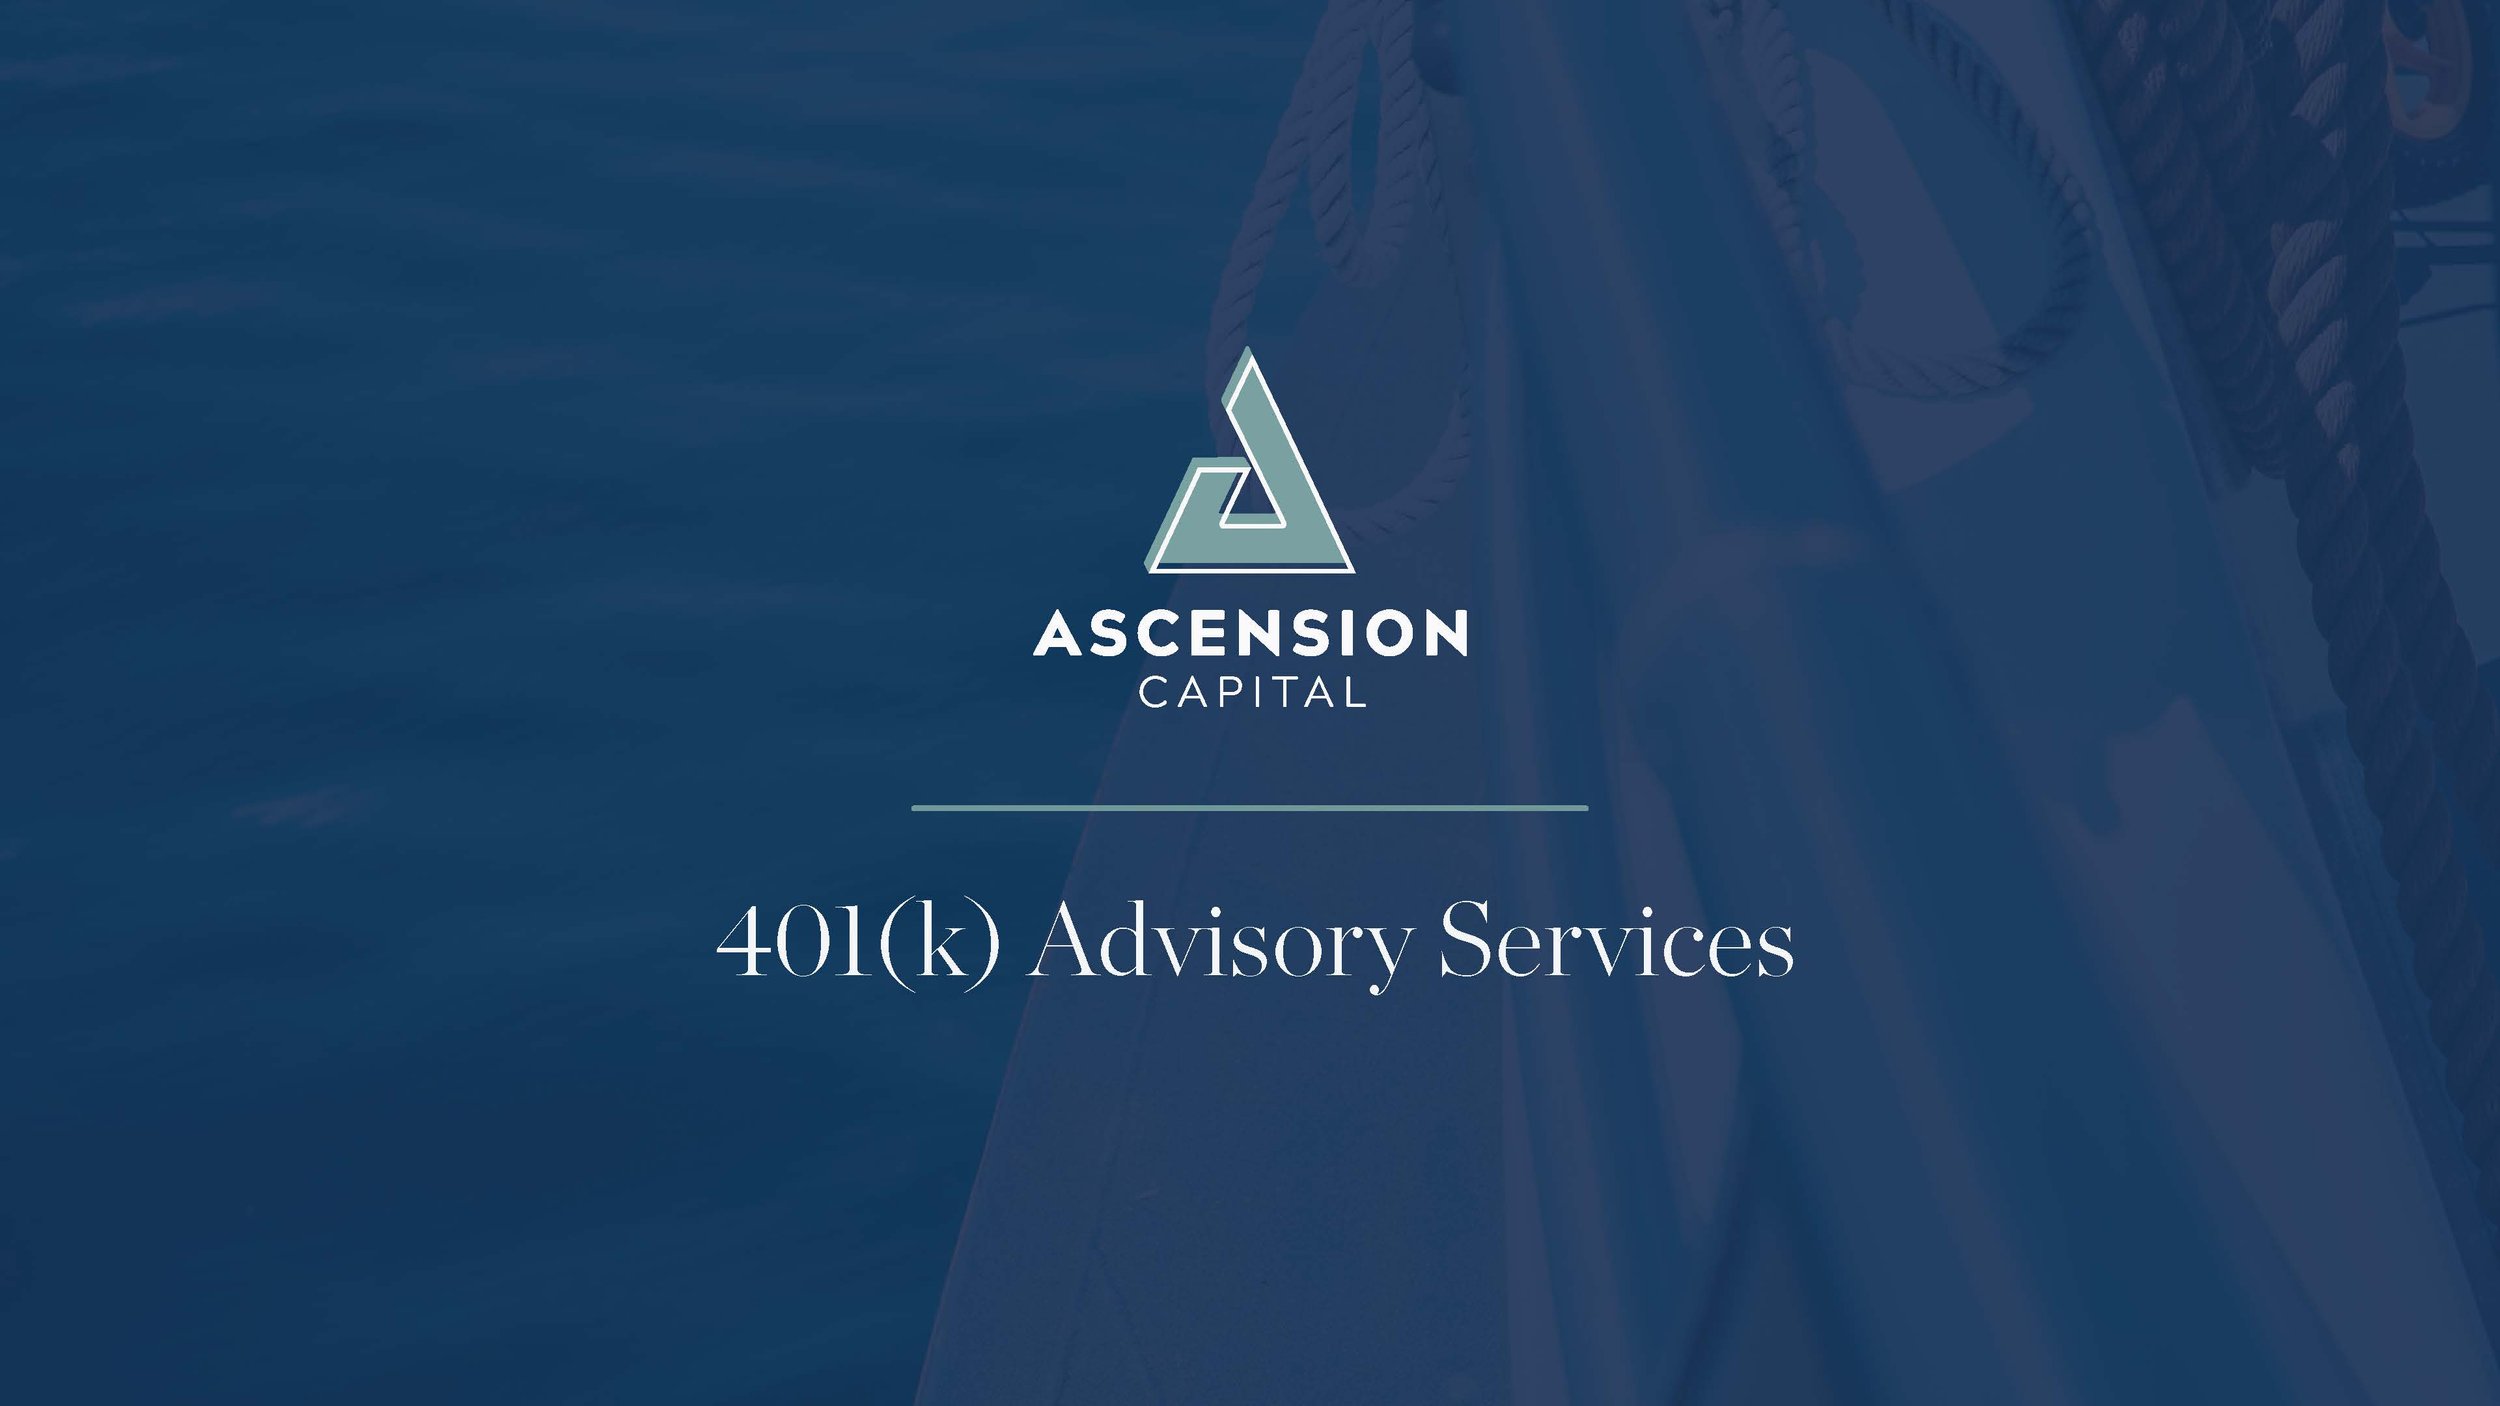 AscensionCapital_MarketingServices_401(k)_Revised_Page_01.jpg